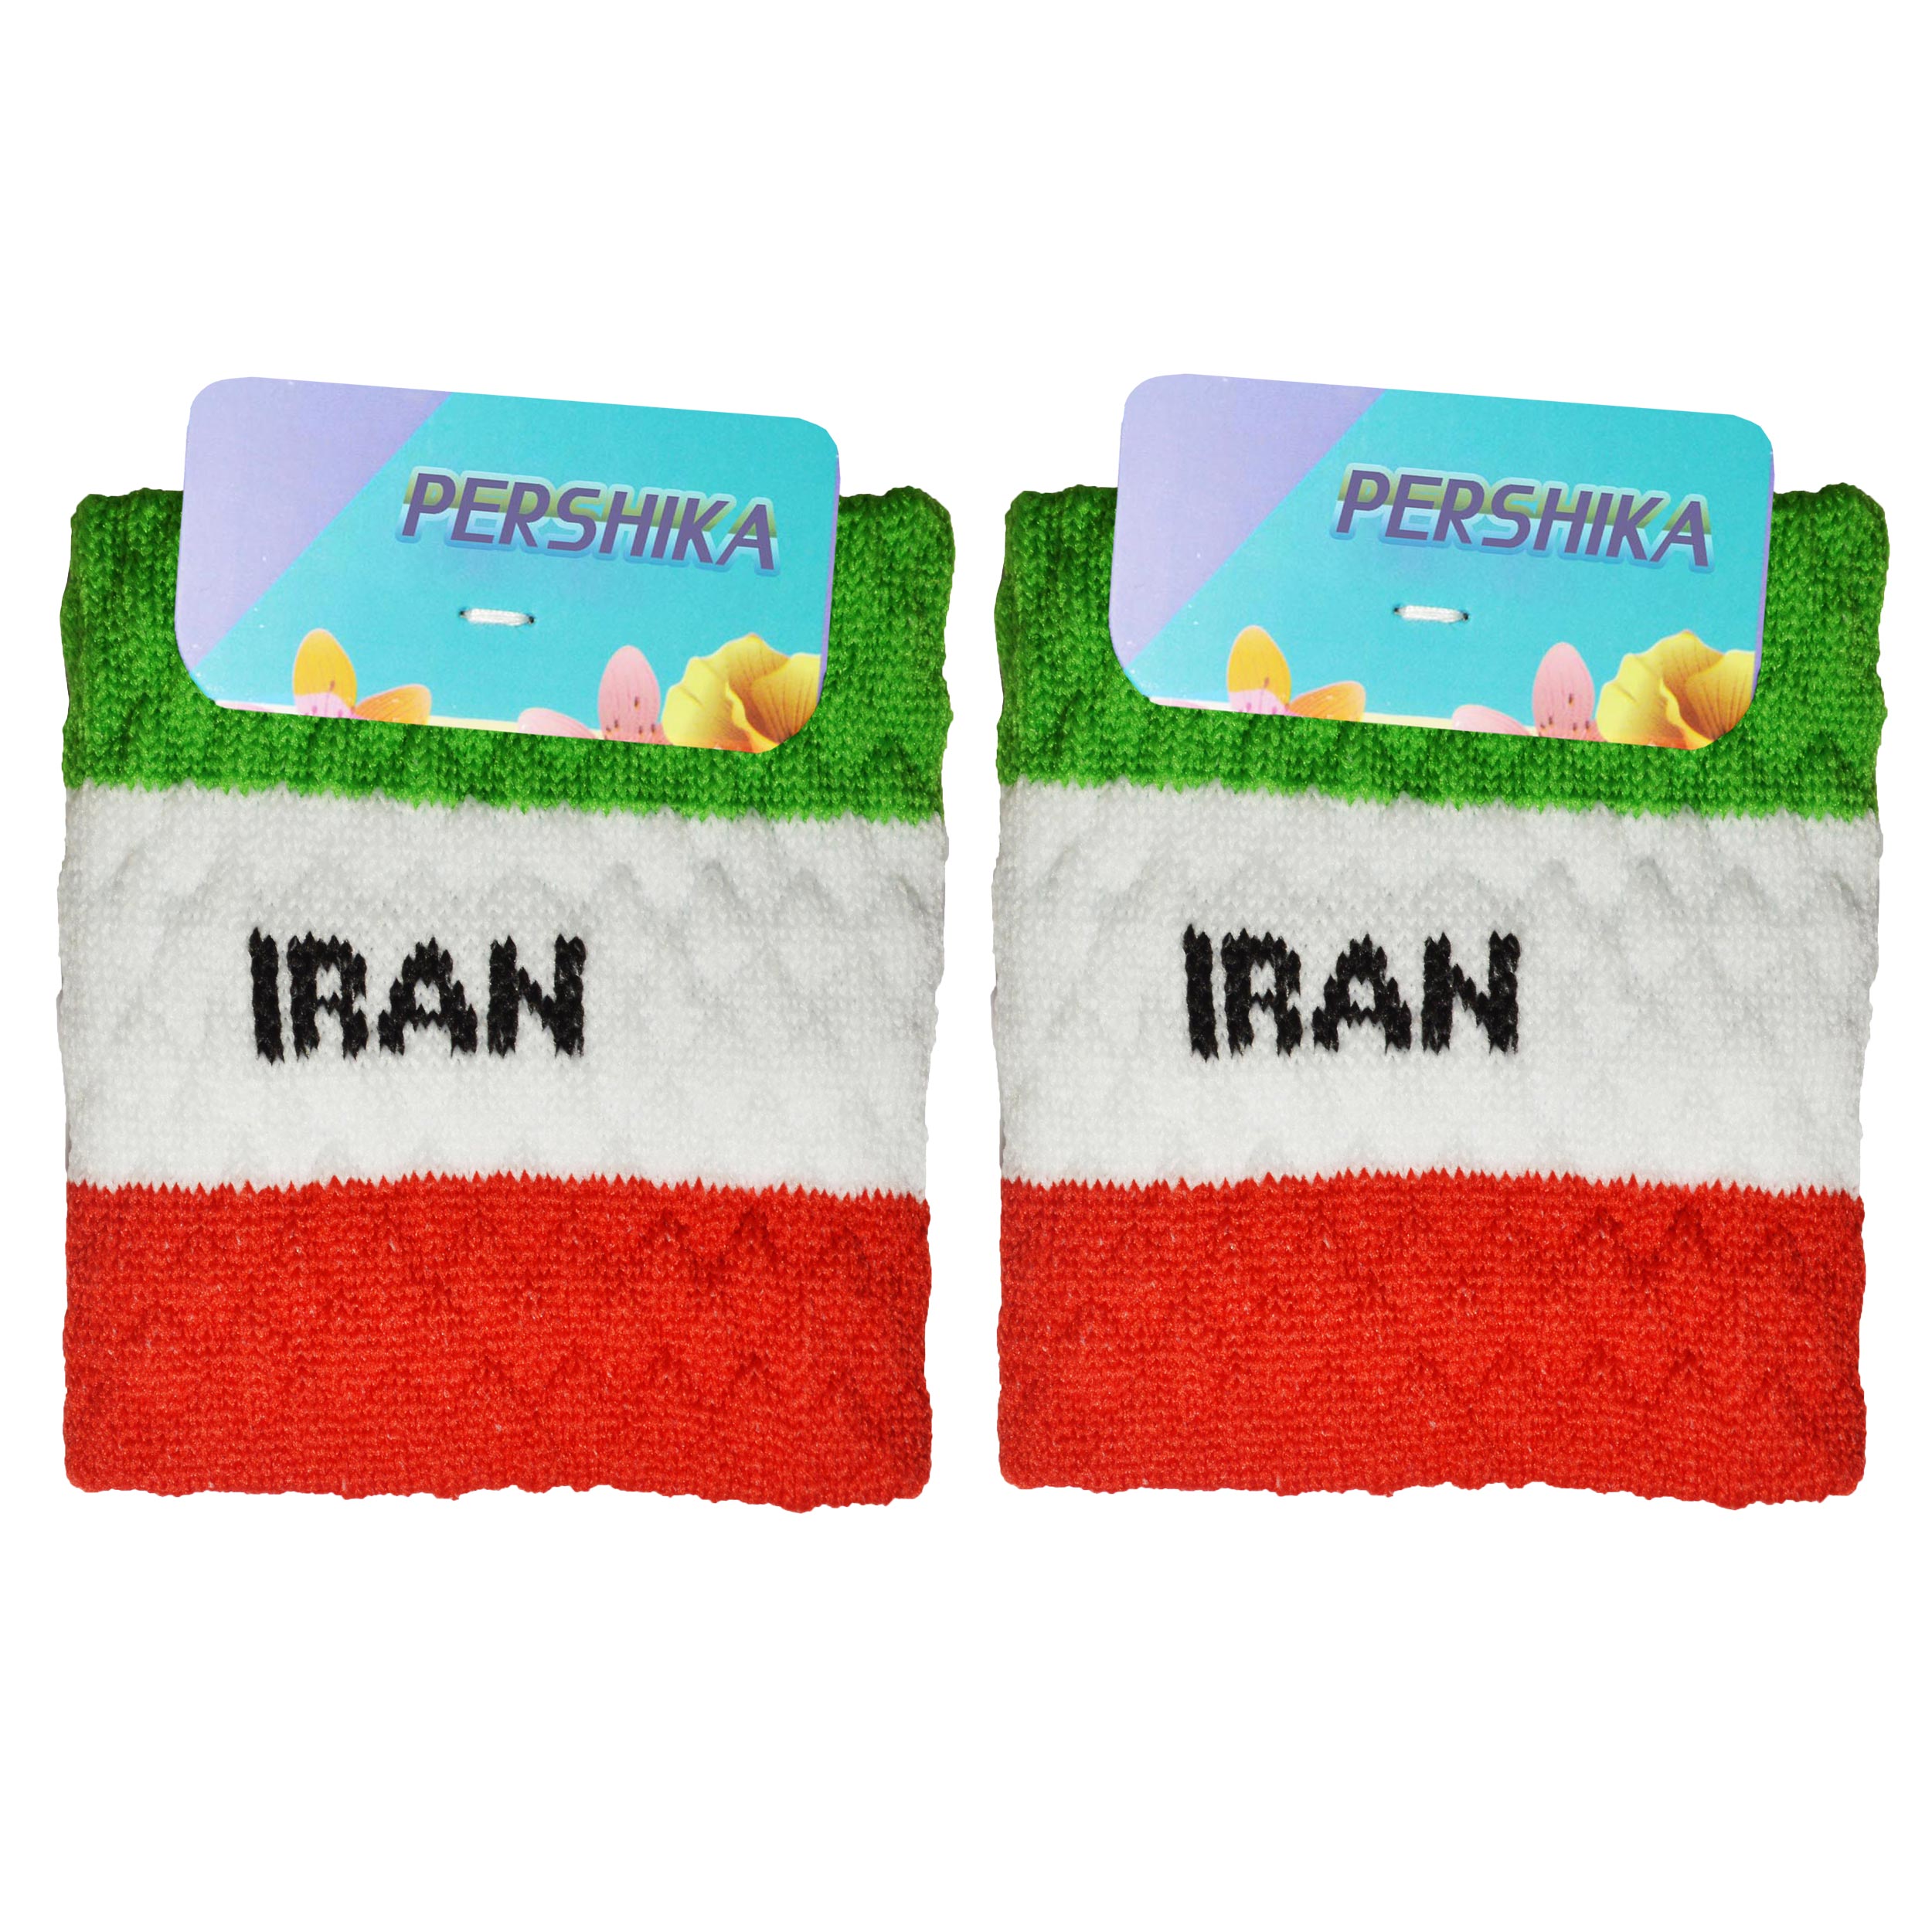 مچ بند ورزشی پرشیکا طرح پرچم کشور ایران بسته 2 عددی